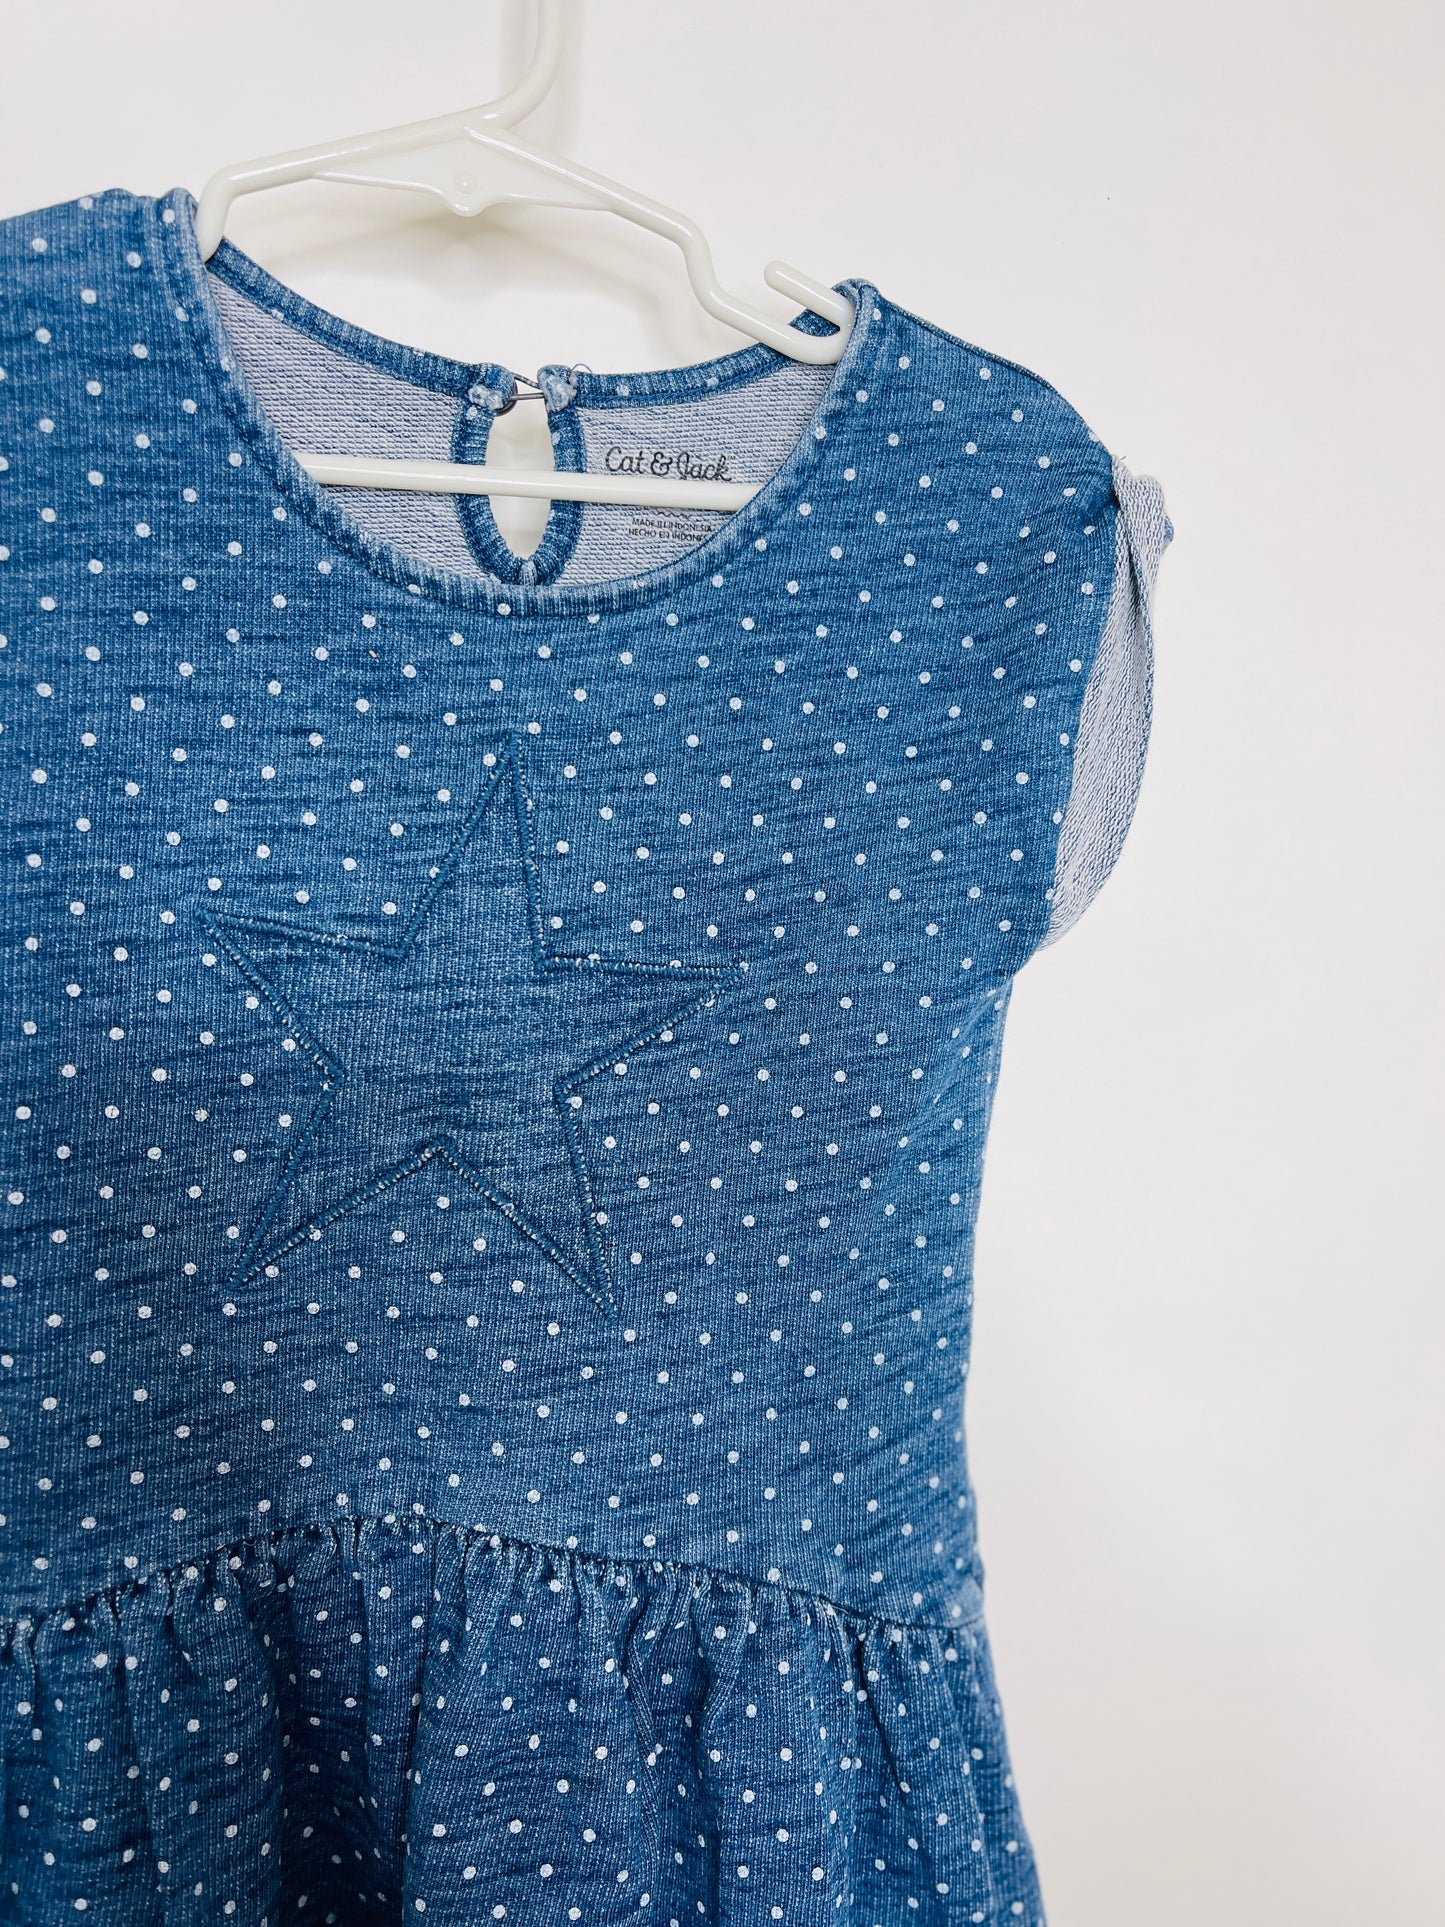 Blue Denim Look Star Polka Dotted Dress - 4T